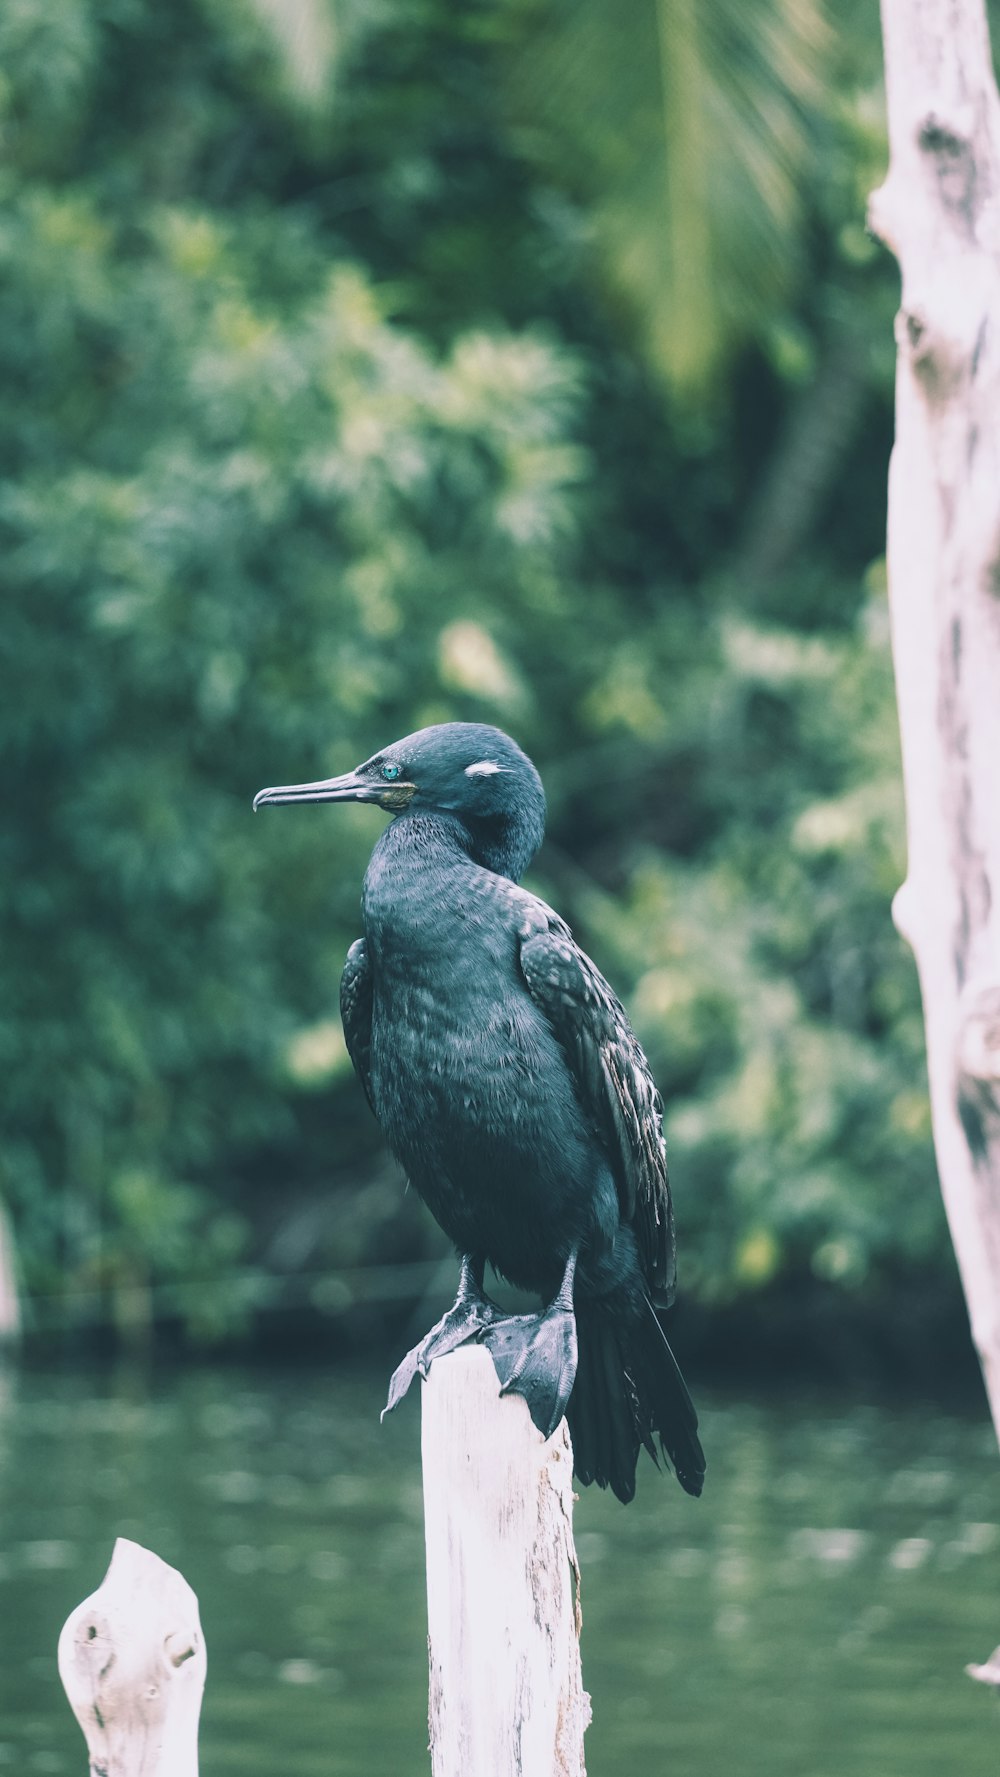 pájaro verde y negro posado en la rama fotografía de enfoque selectivo